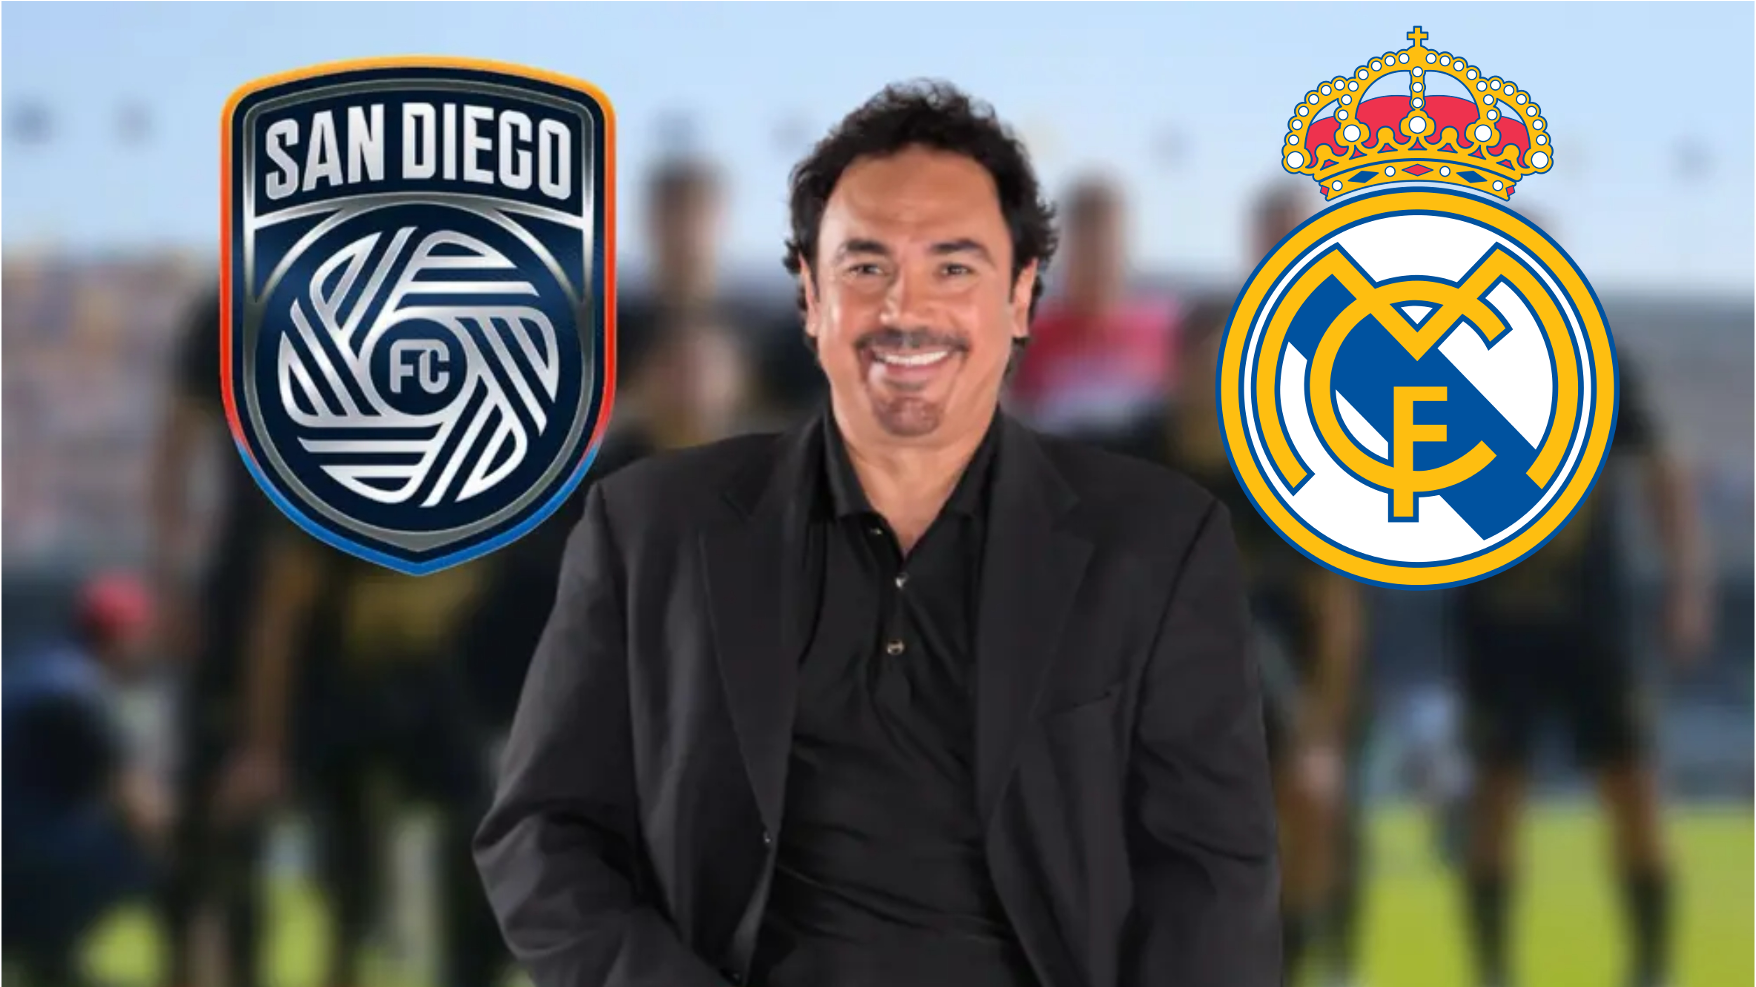 La diferencia entre lo que Hugo Sánchez ganaba en el Real Madrid vs lo que ganaría en San Diego